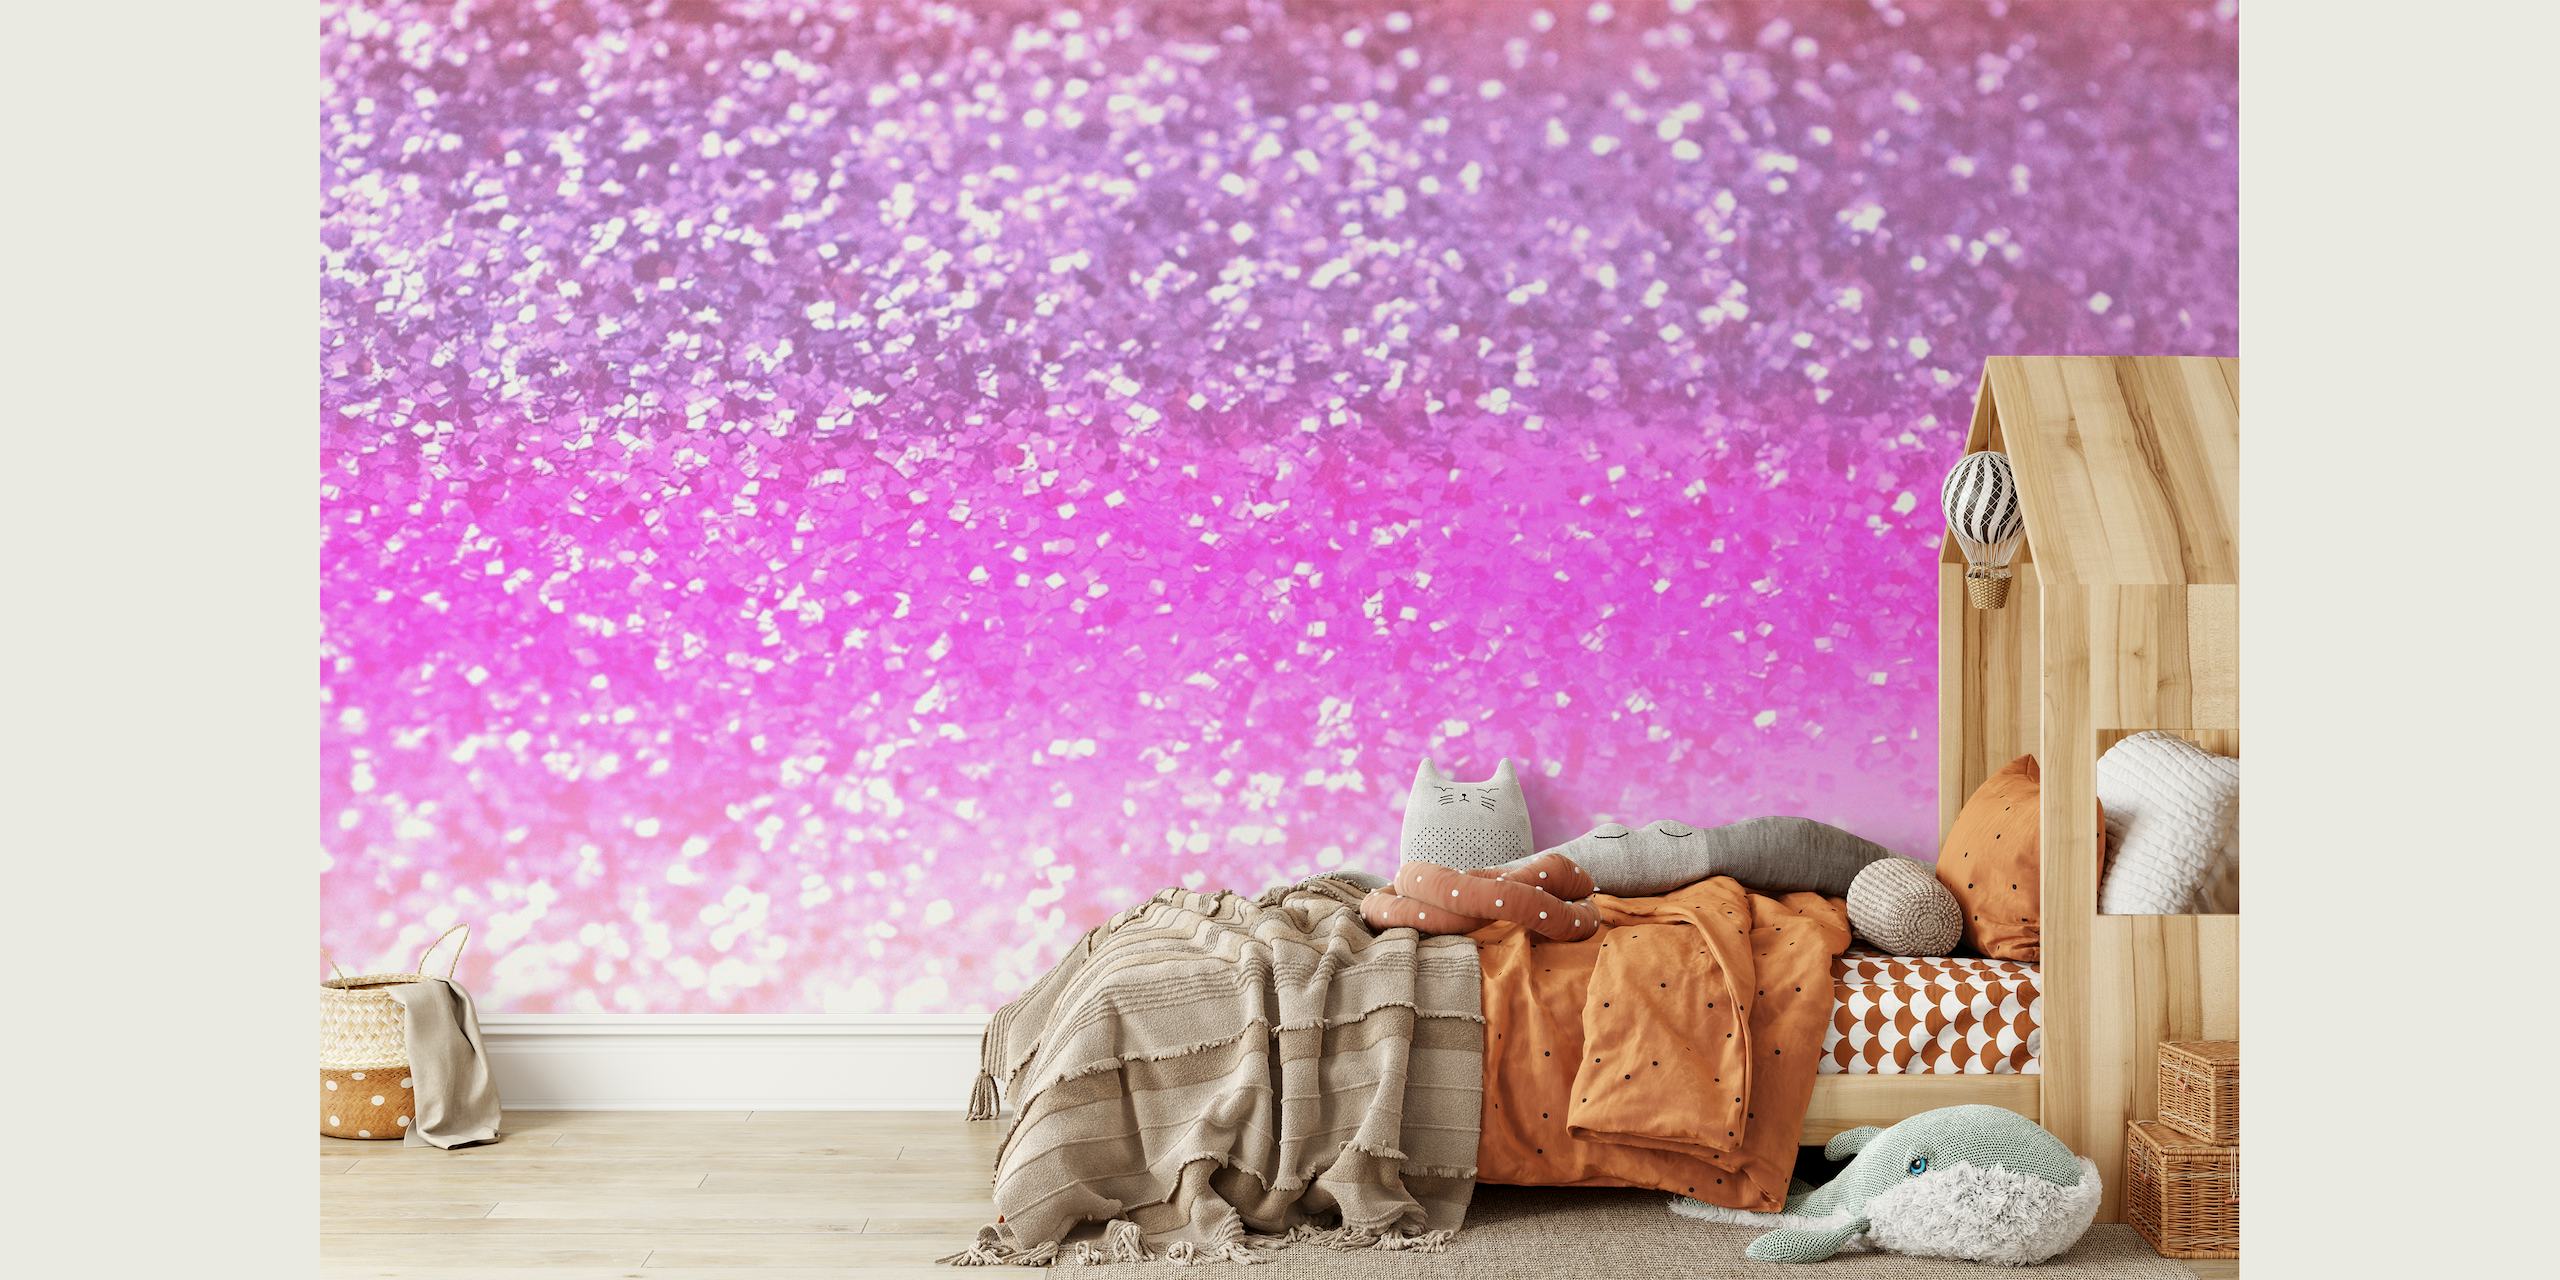 Mural de pared degradado en rosa y morado brillante para crear un ambiente mágico en la habitación.